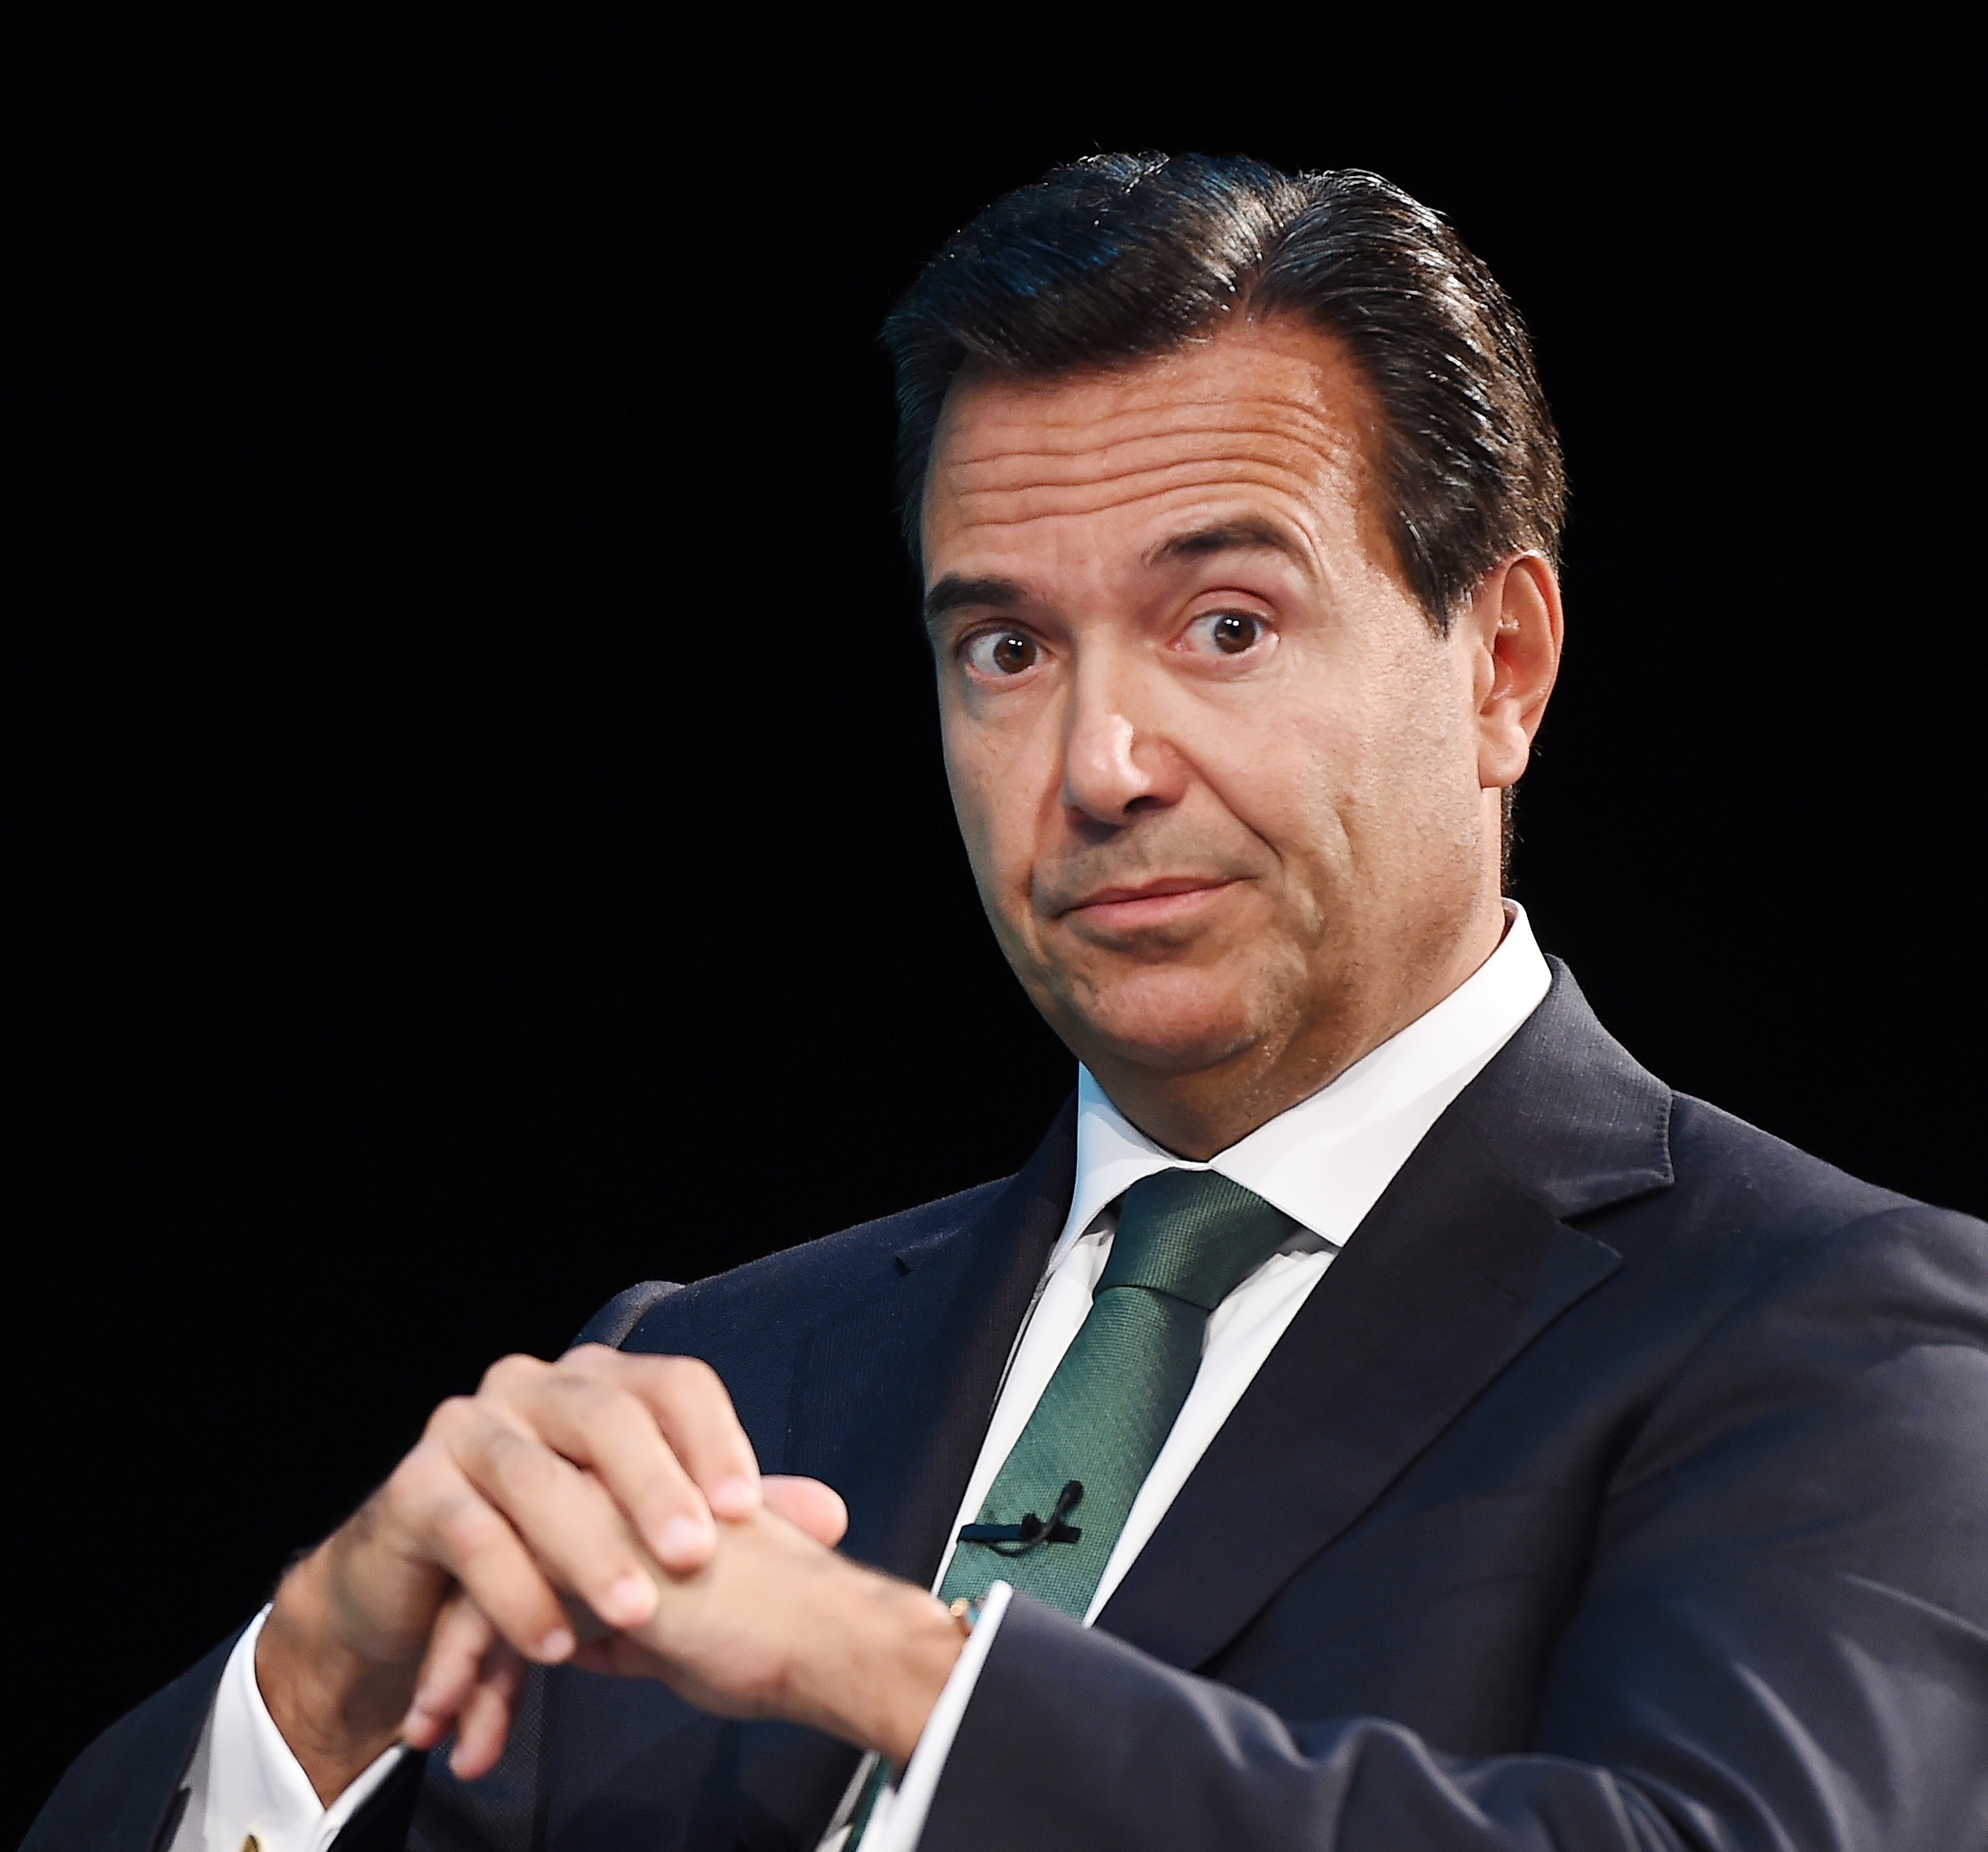 Quién es Antonio Horta-Osório, el presidente de Credit Suisse Group que dimitió tras saltarse la cuarentena